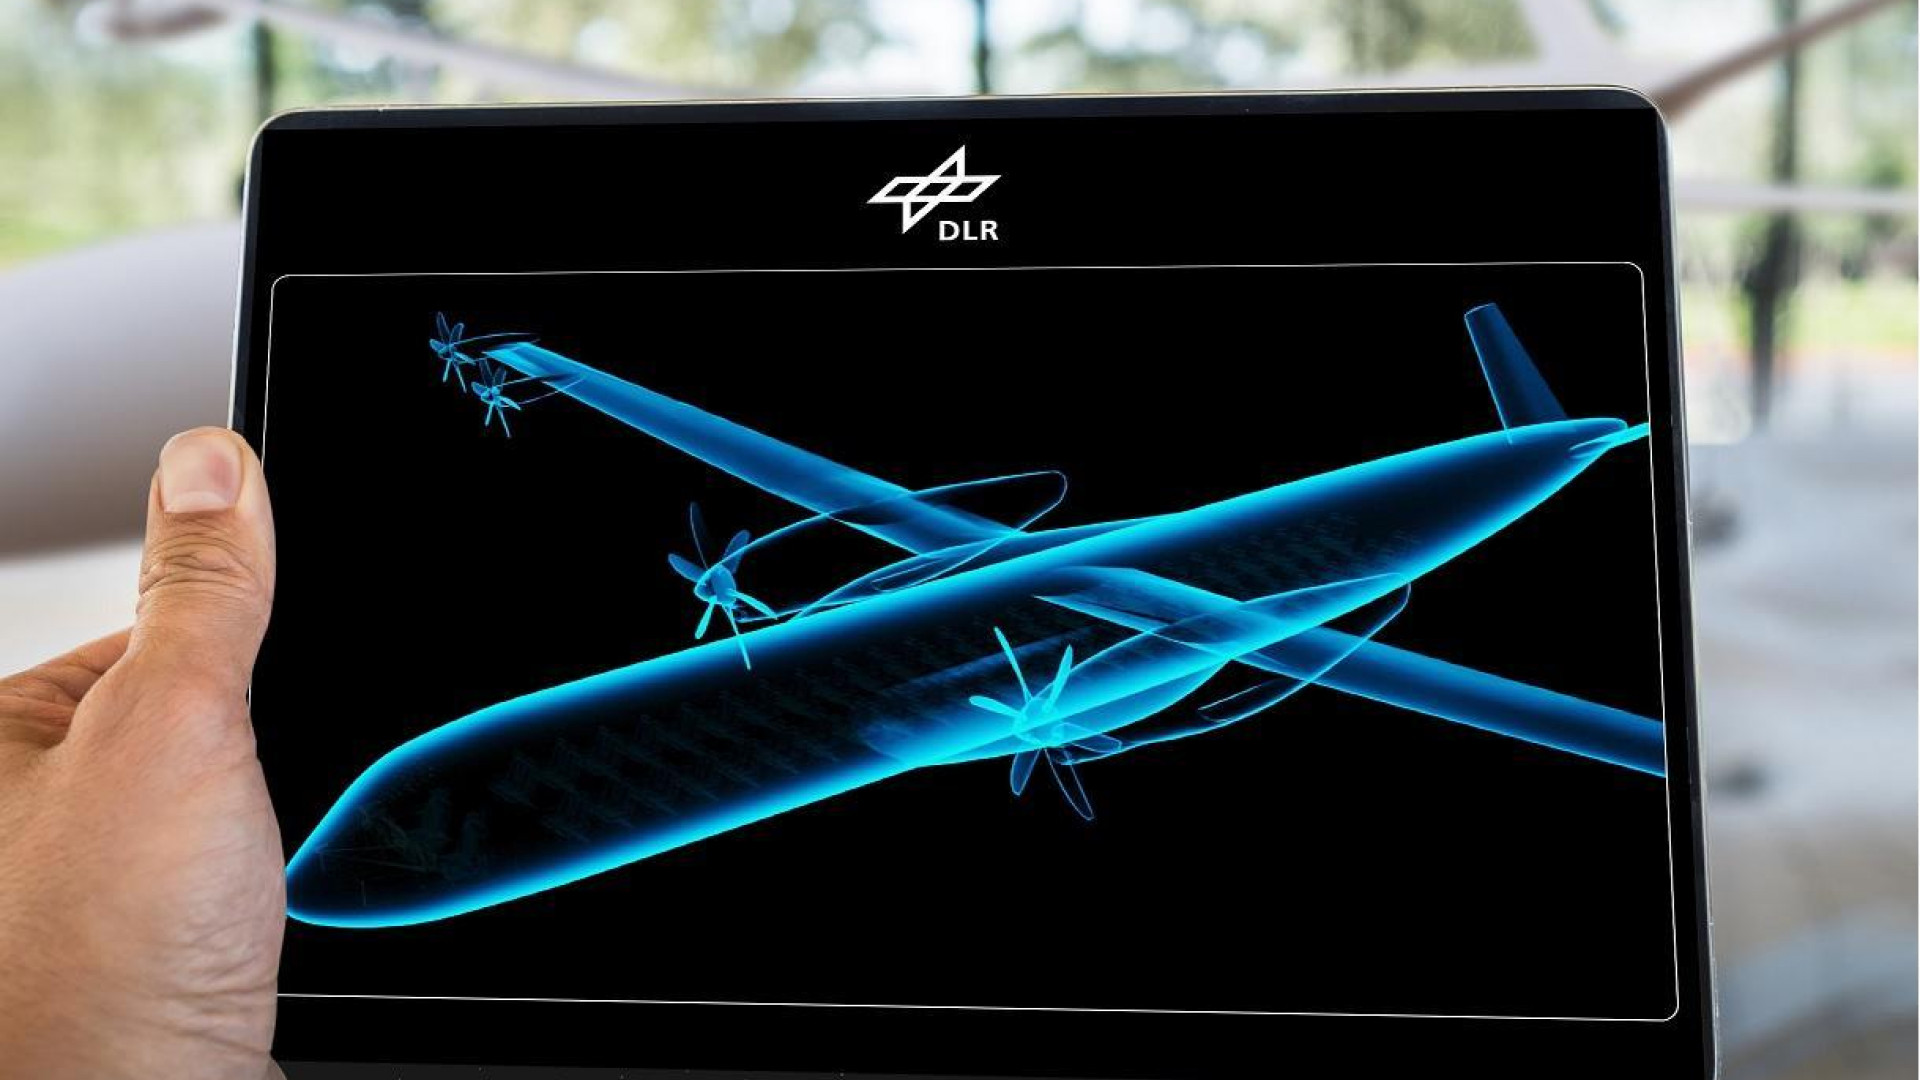 Eine futuristische Silhouette eines Flugzeugs auf einem Tablet, den jemand in der Hand hält.